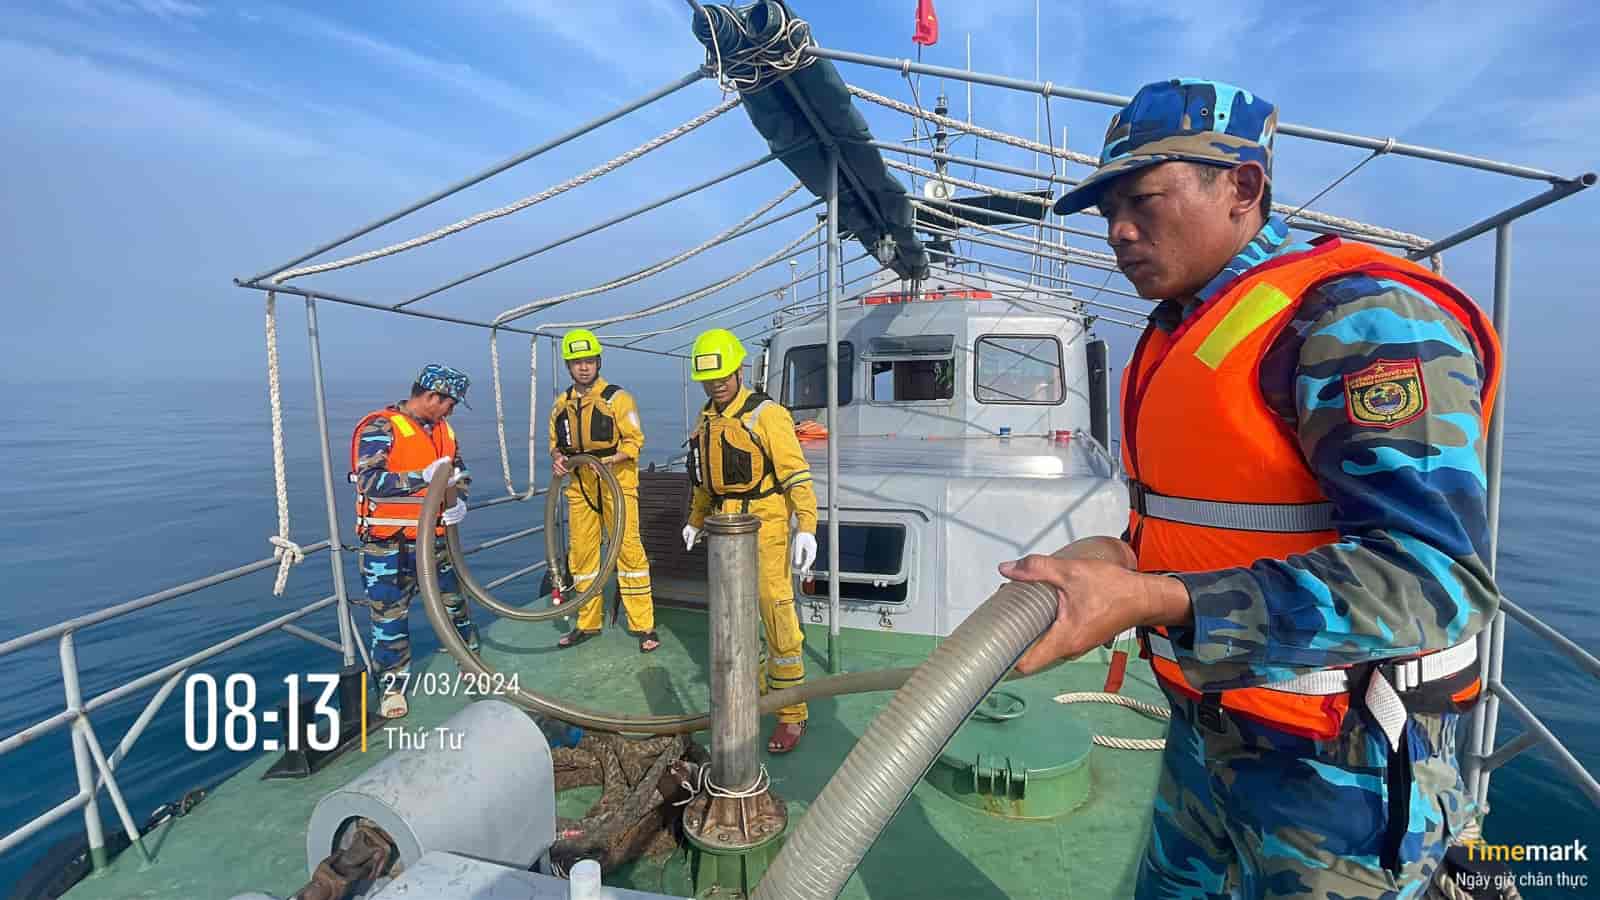 Nguy cơ tràn dầu từ sự cố chìm tàu trên biển ở Quảng Nam bị loại bỏ